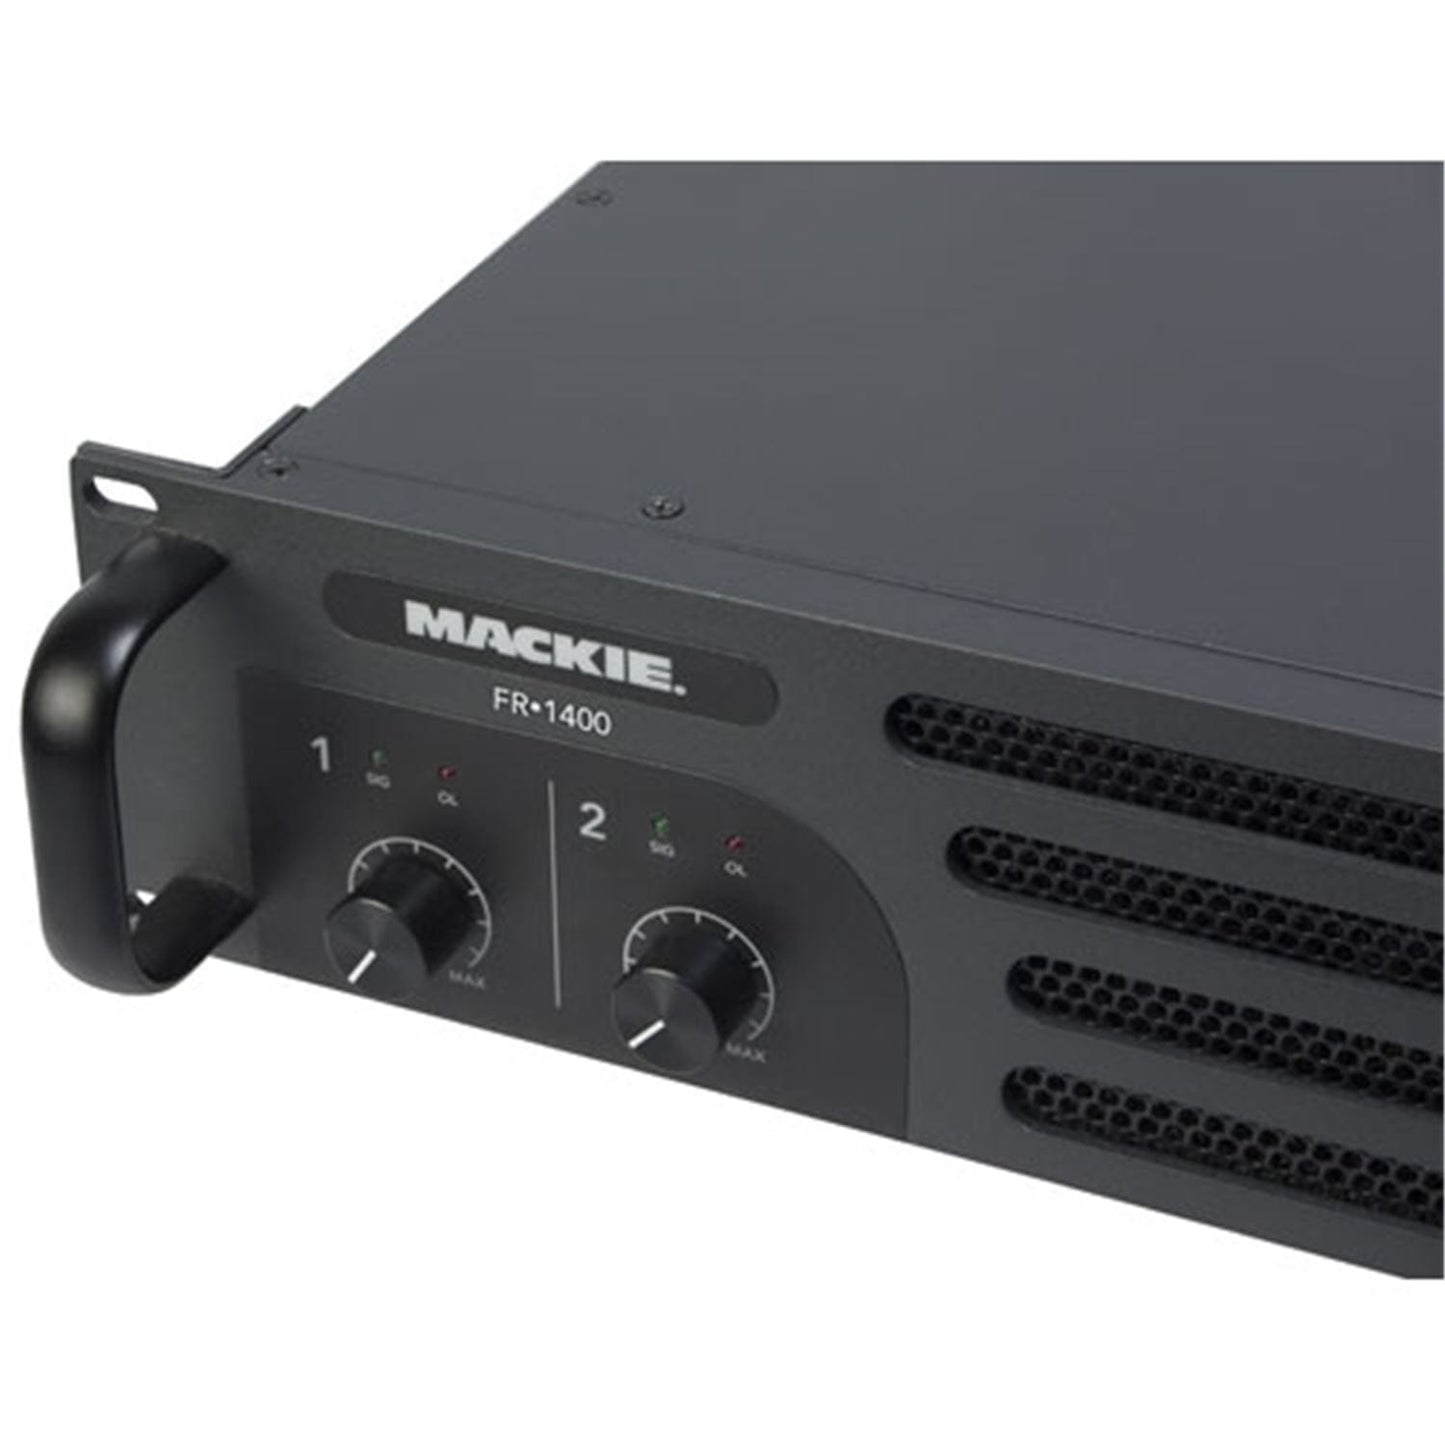 Mackie FR-1400 Power Amp 2X310W @ 8 Ohms - ProSound and Stage Lighting